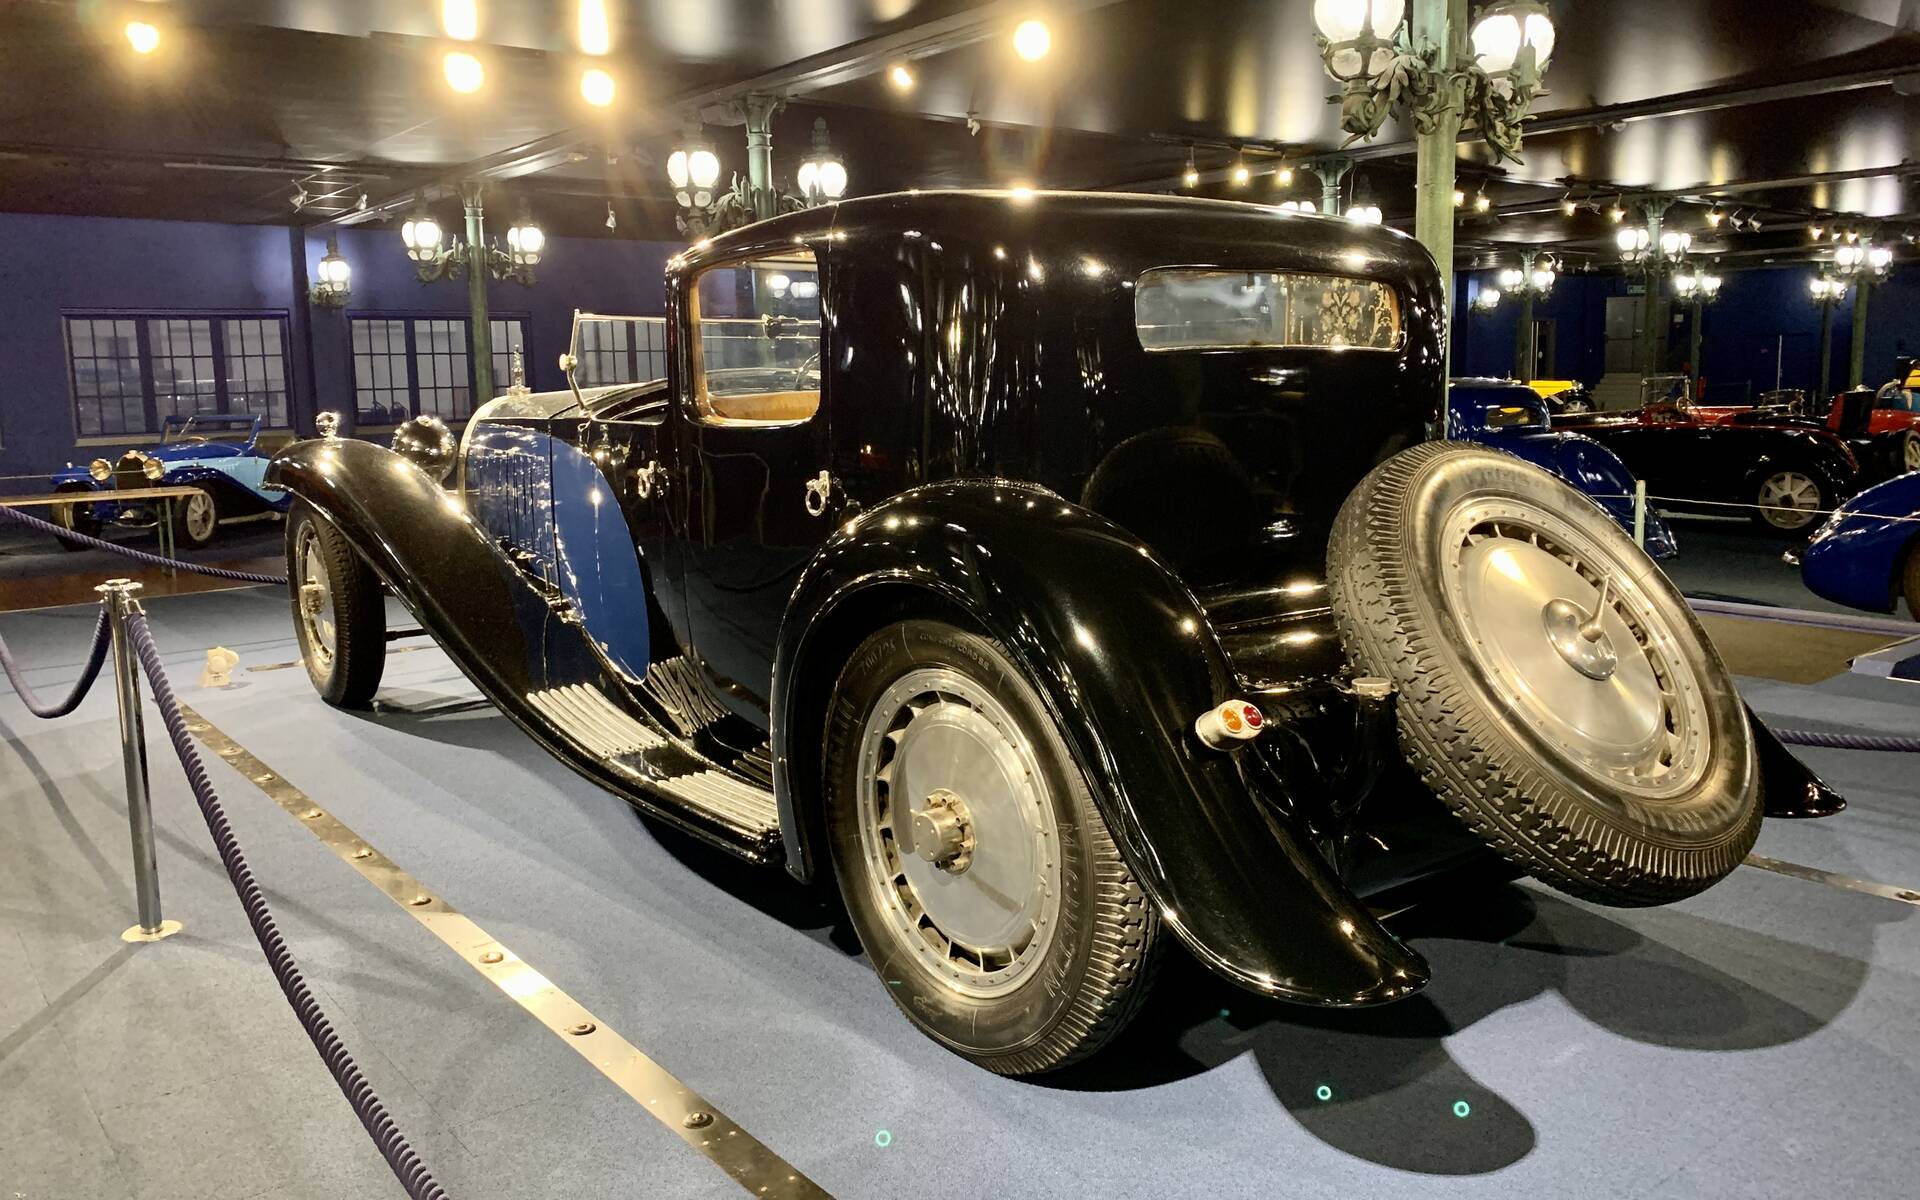 En photos : une centaine de Bugatti réunies dans un même musée 503087-en-photos-des-dizaines-de-bugatti-reunies-dans-un-meme-musee